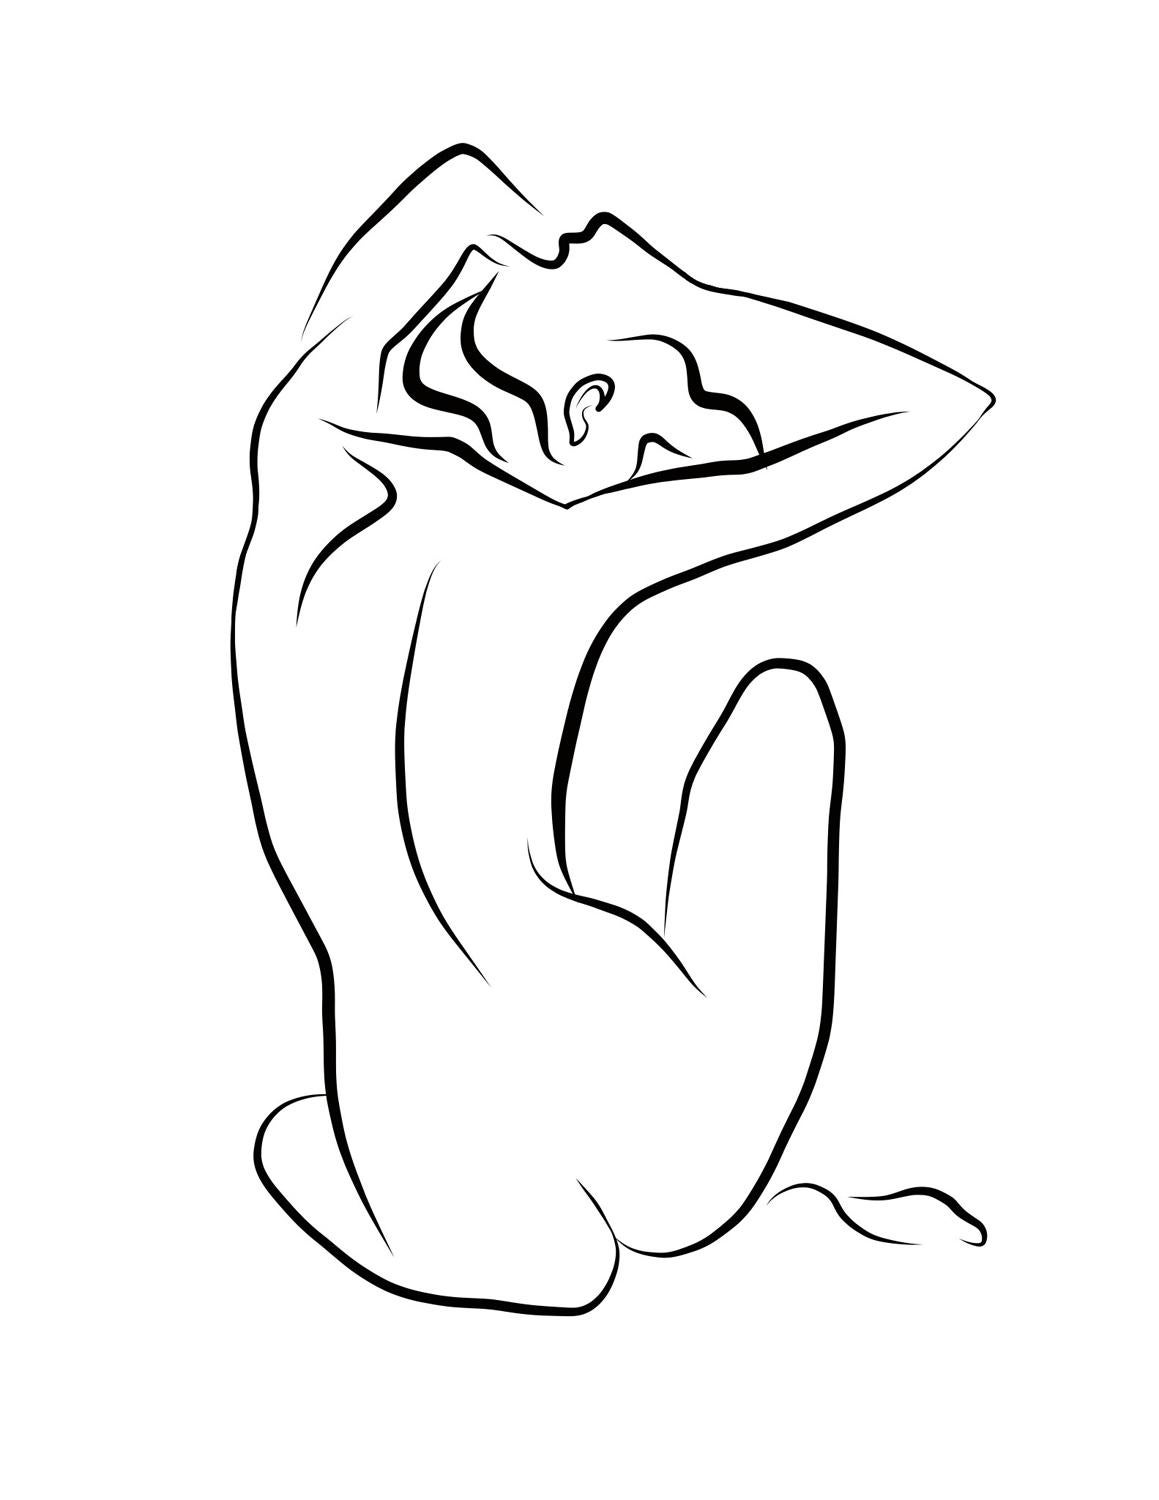 Haiku #43 - Digital Vector Drawing Seated Female Nude Woman Figure from Behind - Art by Michael Binkley